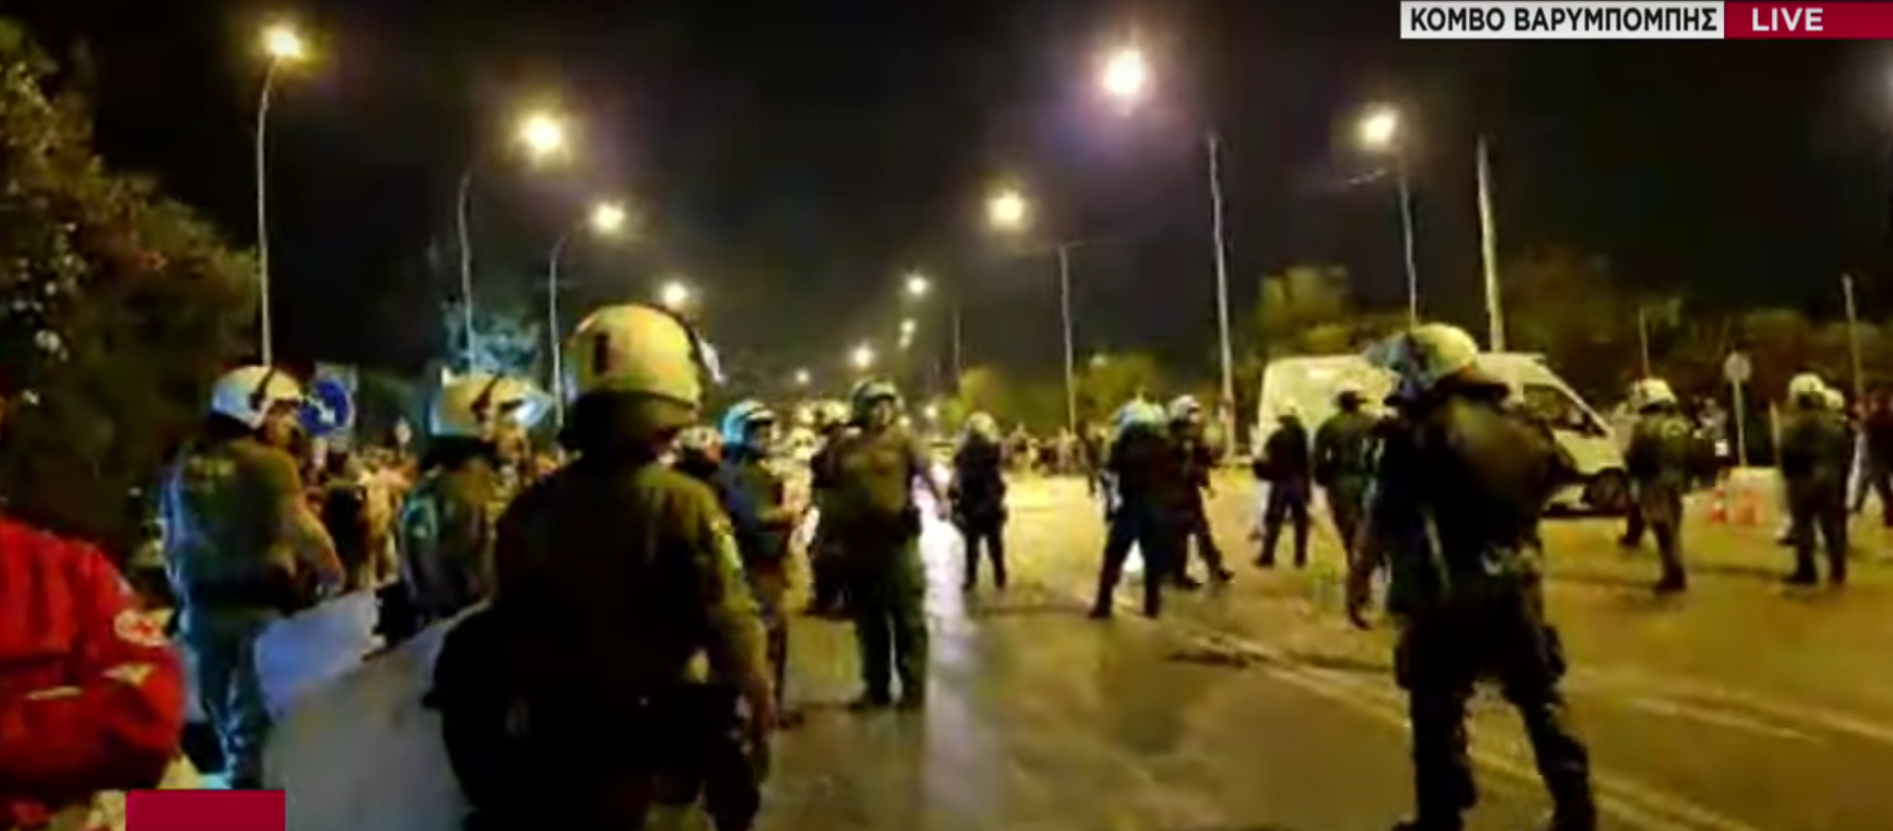 Ντροπή: Η κυβέρνηση έστειλε τα ΜΑΤ για να δείρουν τους πυρόπληκτους στη Βαρυμπόμπη επειδή διαμαρτυρήθηκαν! (βίντεο)